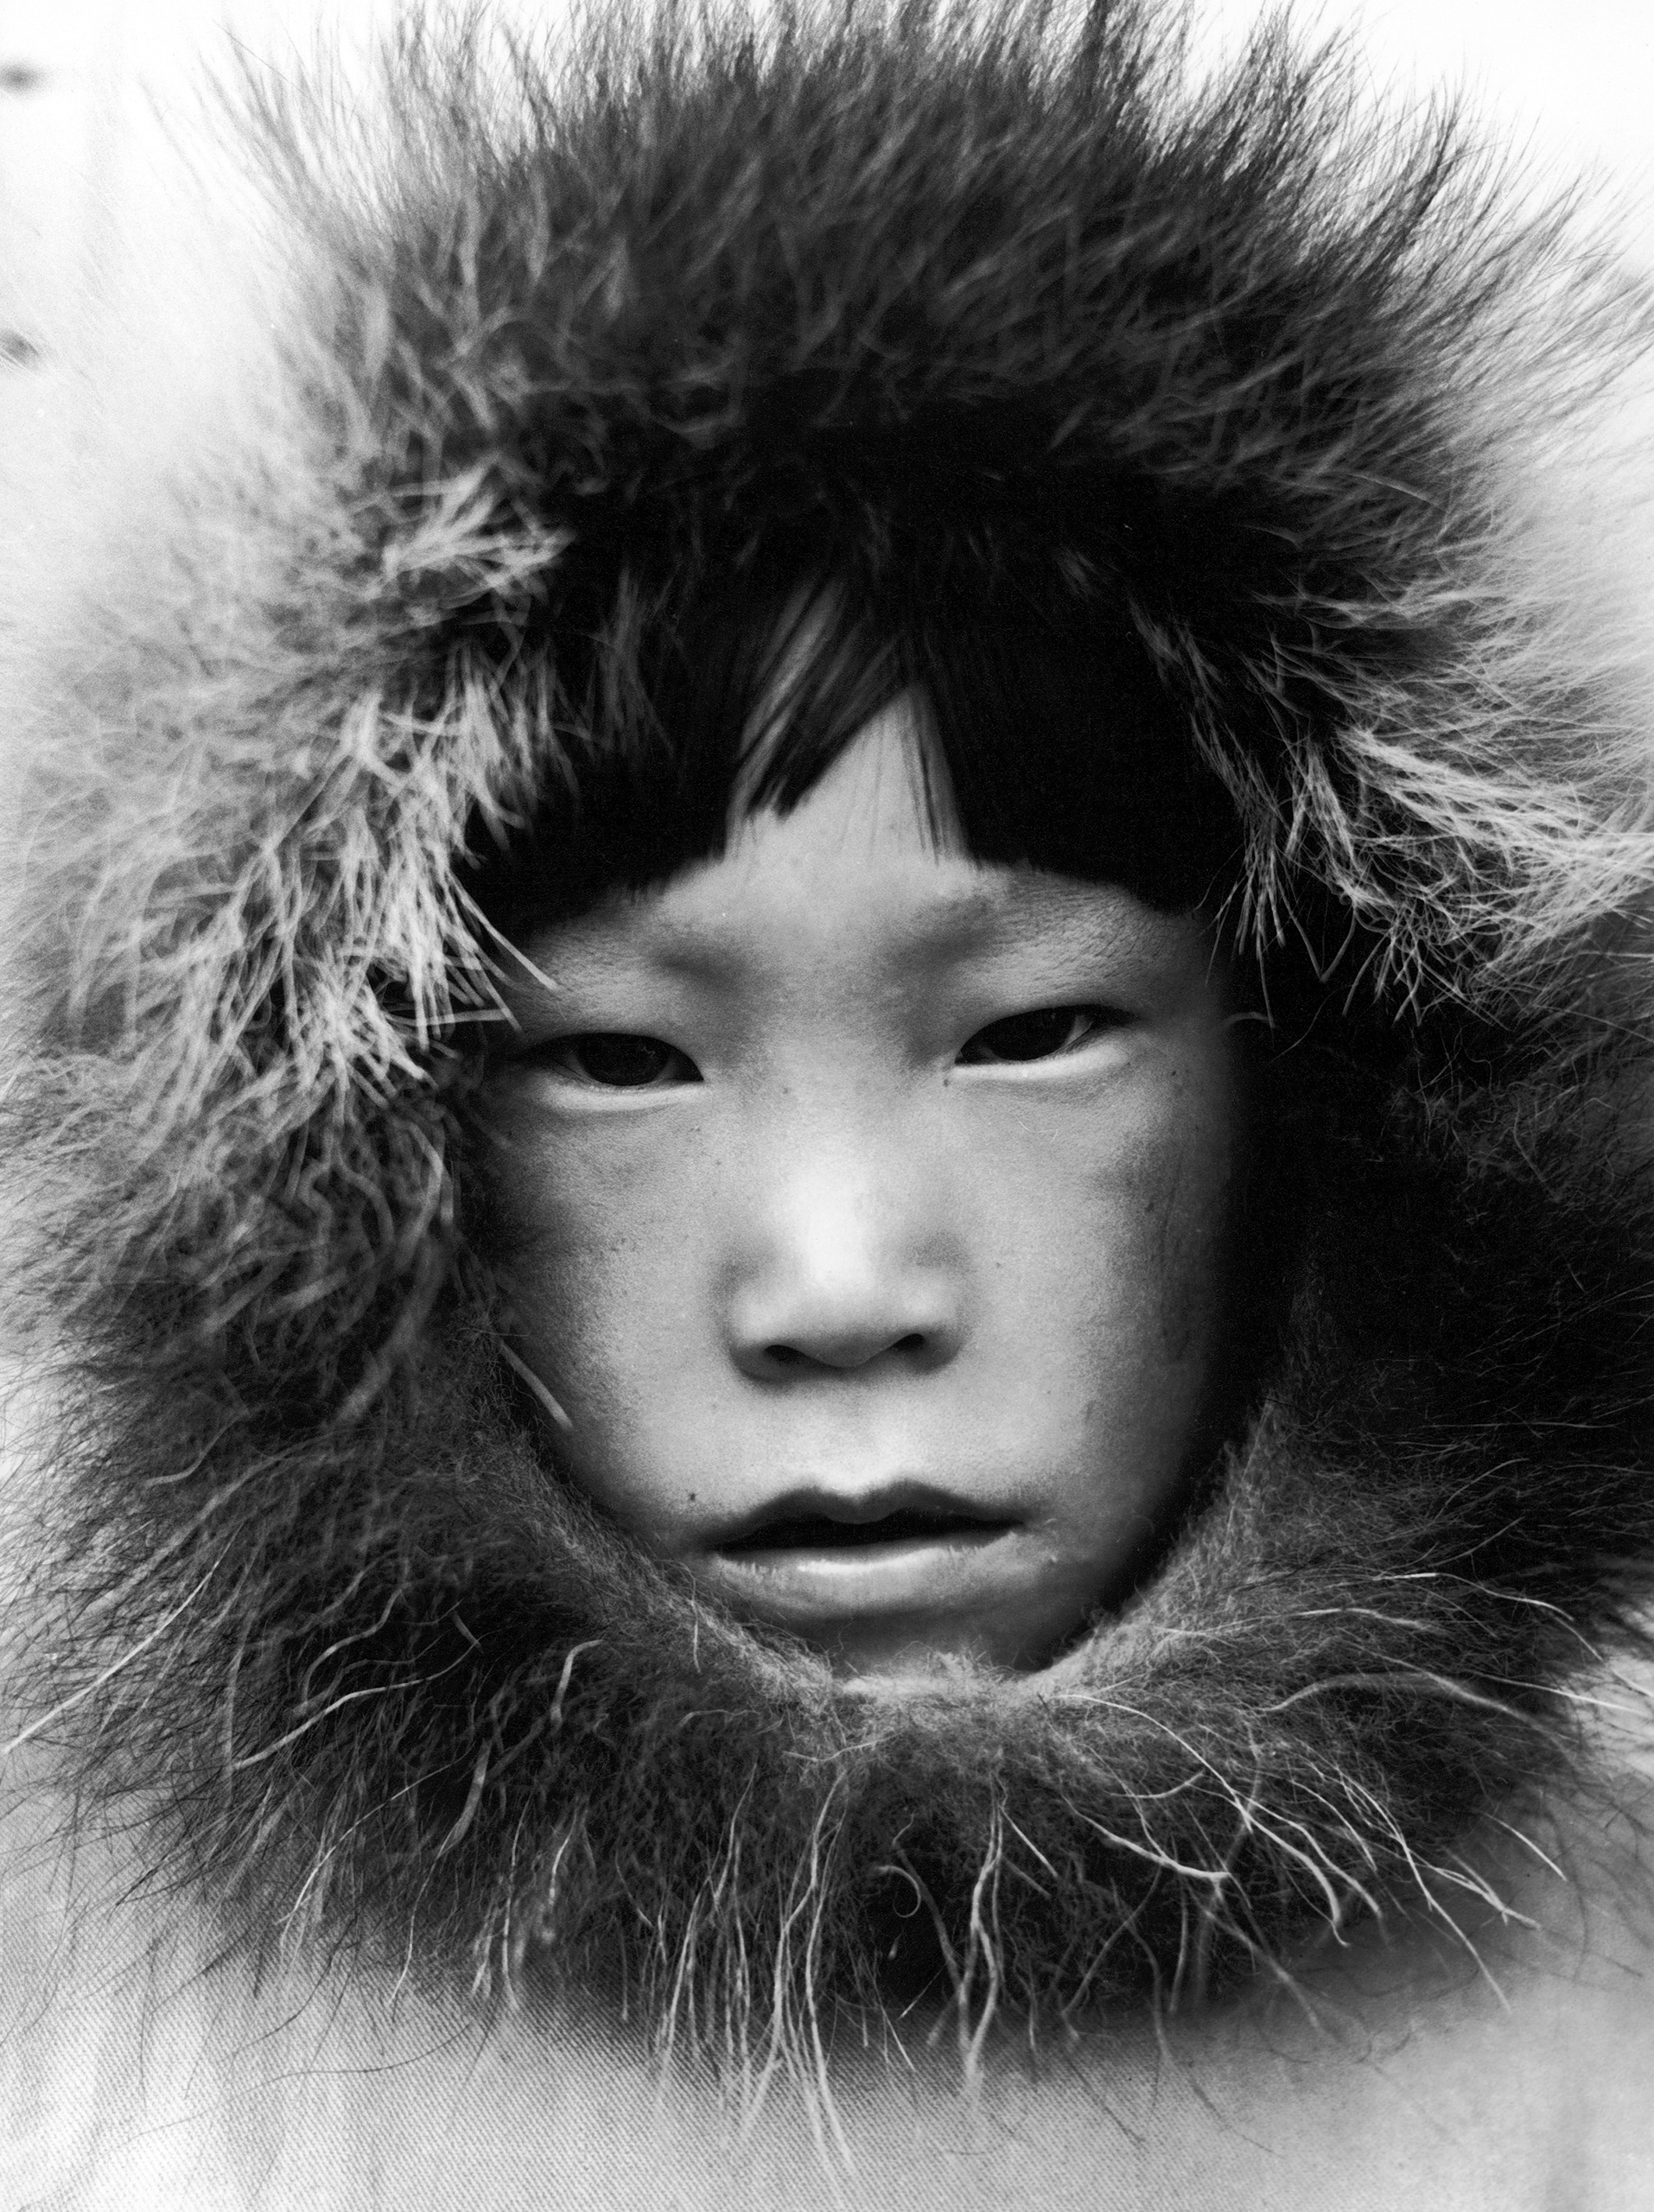 Eskimo child in Canada, 1937.